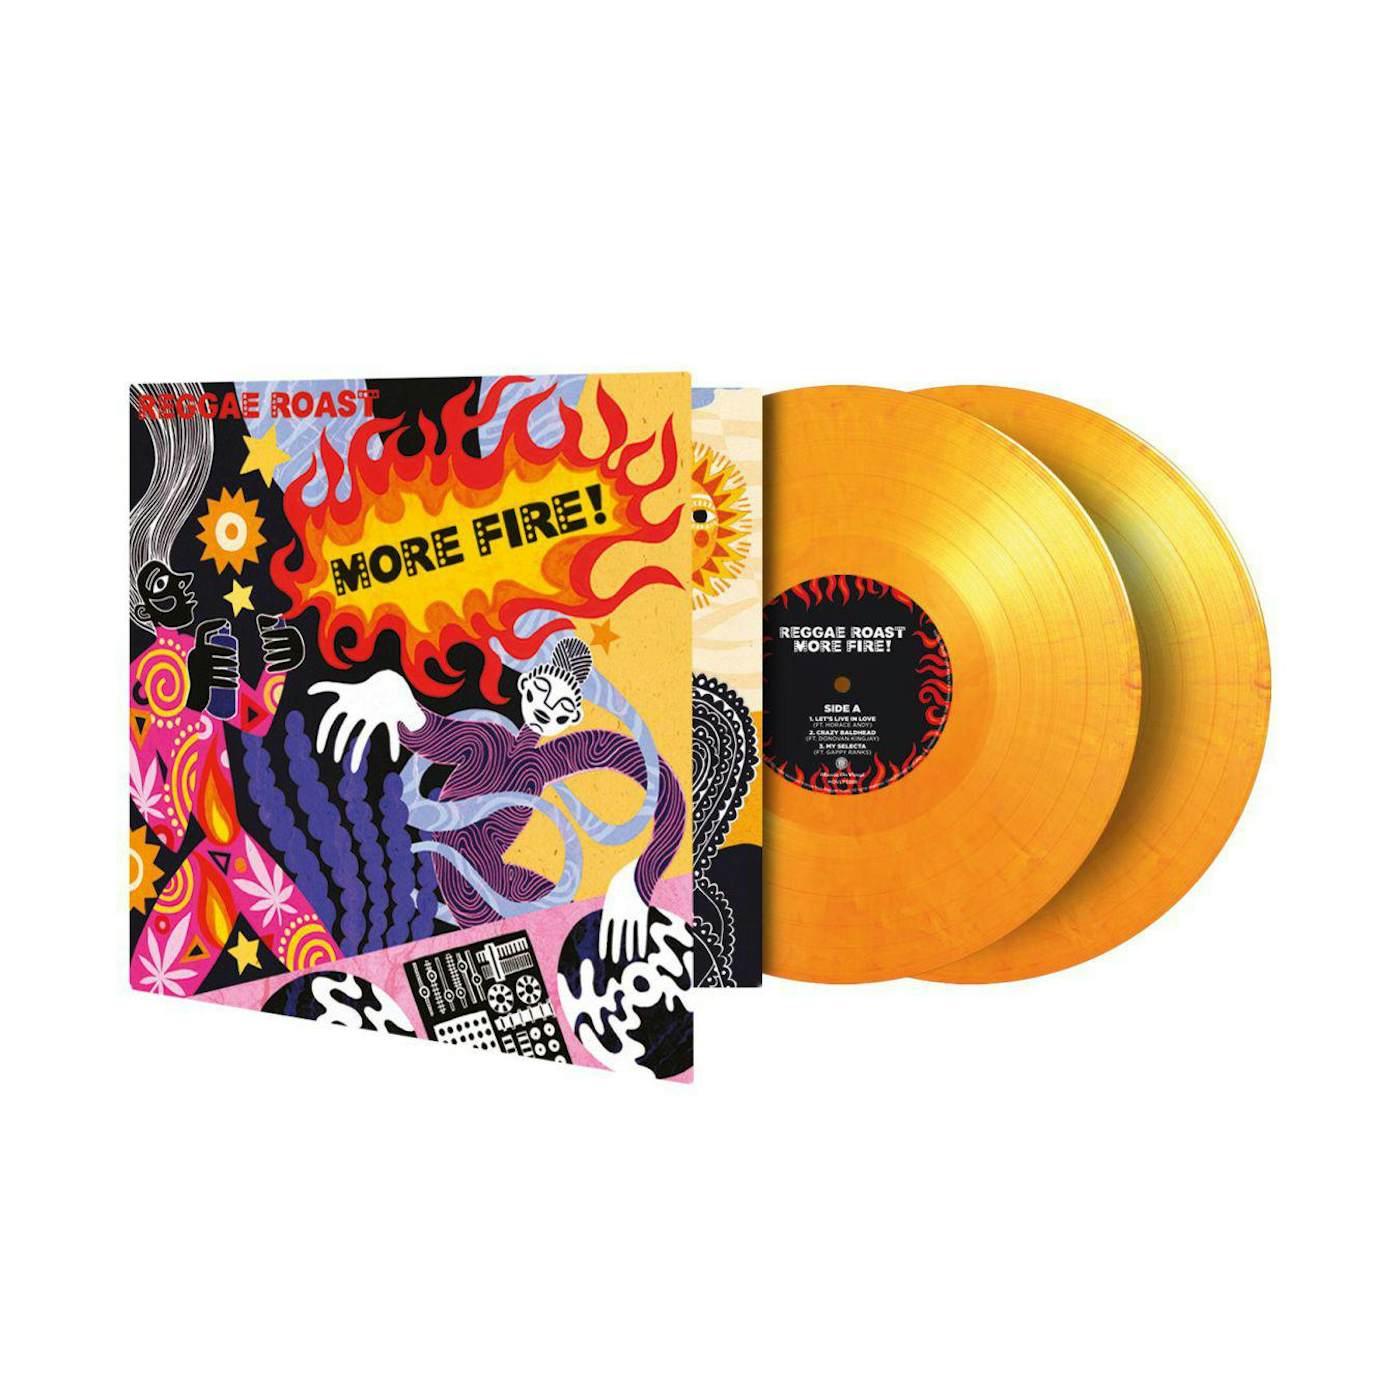 Reggae Roast More Fire! (2lp/Limited/Flaming Vinyl Record/180g/2 Printed Inndersleeves/gatefold/Numbered/Import)